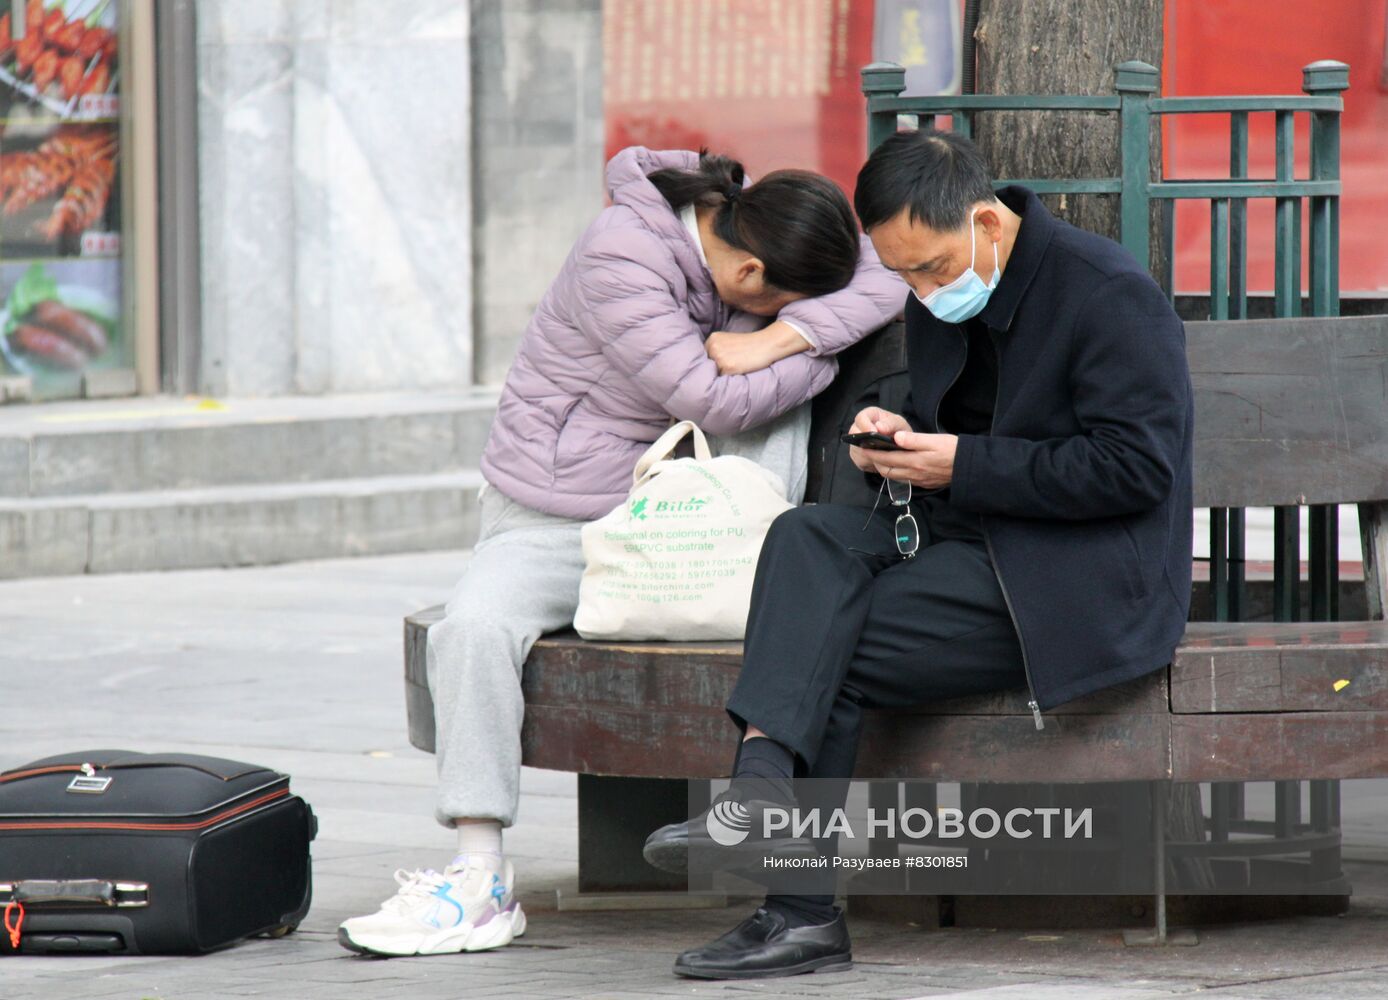 Повседневная жизнь в Пекине